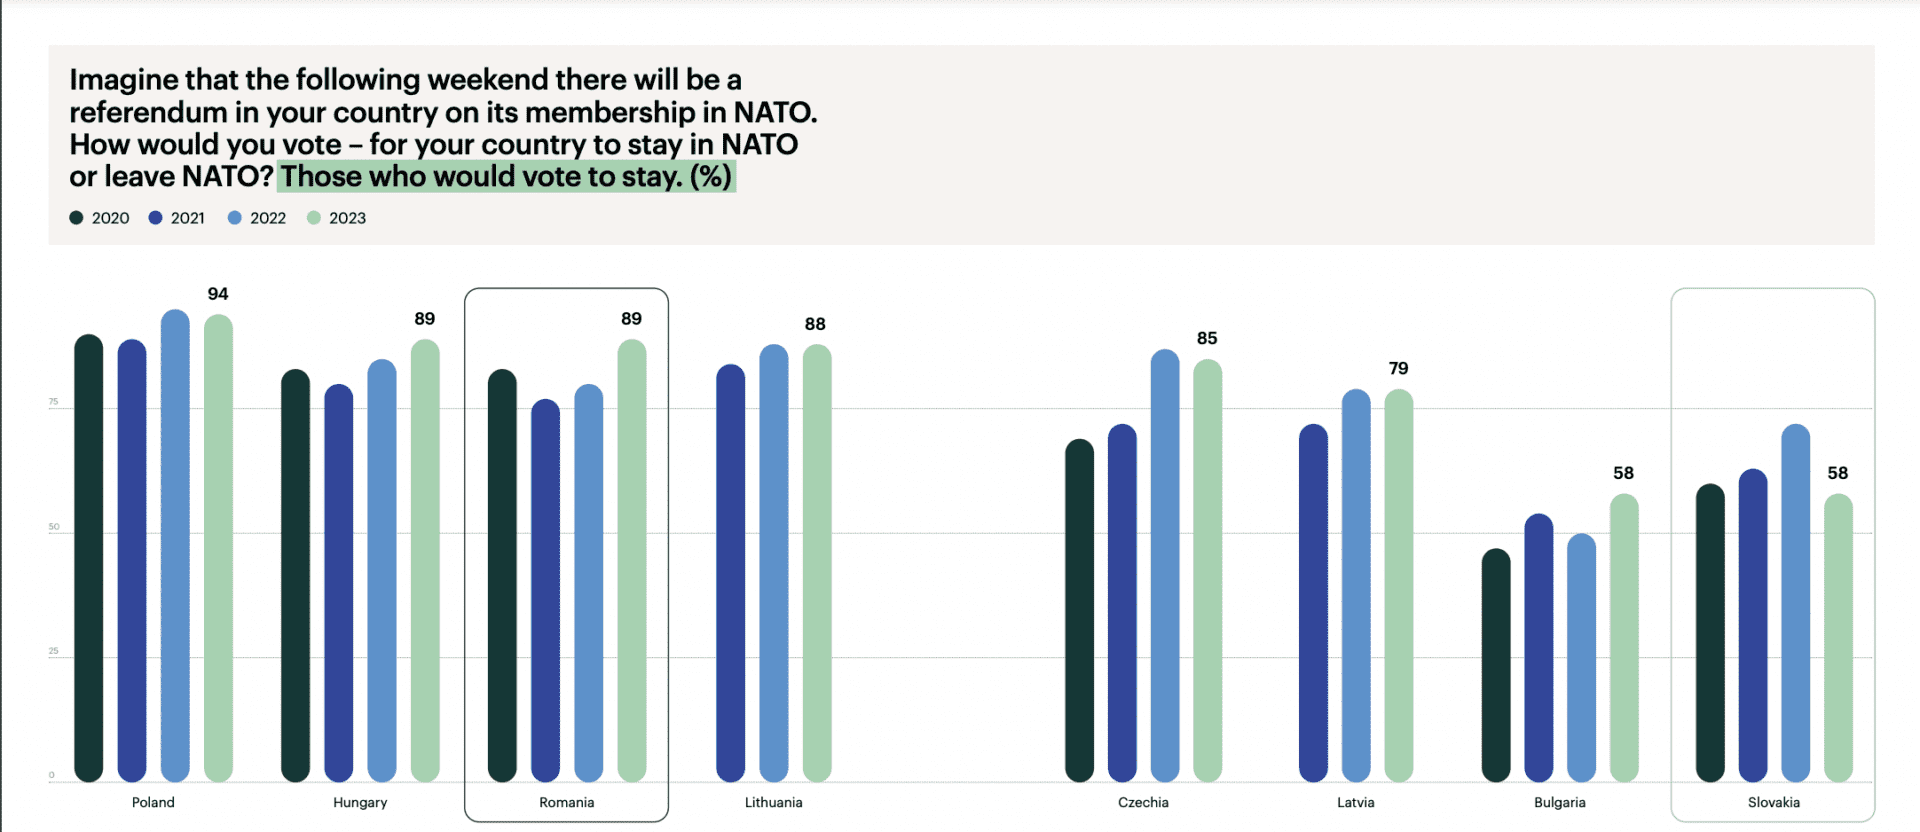 Zrzut ekranu pokazuje poparcie dla NATO w Polsce, Węgrzech, Rumunii, Litwie, Czechach, Łotwie, Bułgarii i Słowacji.